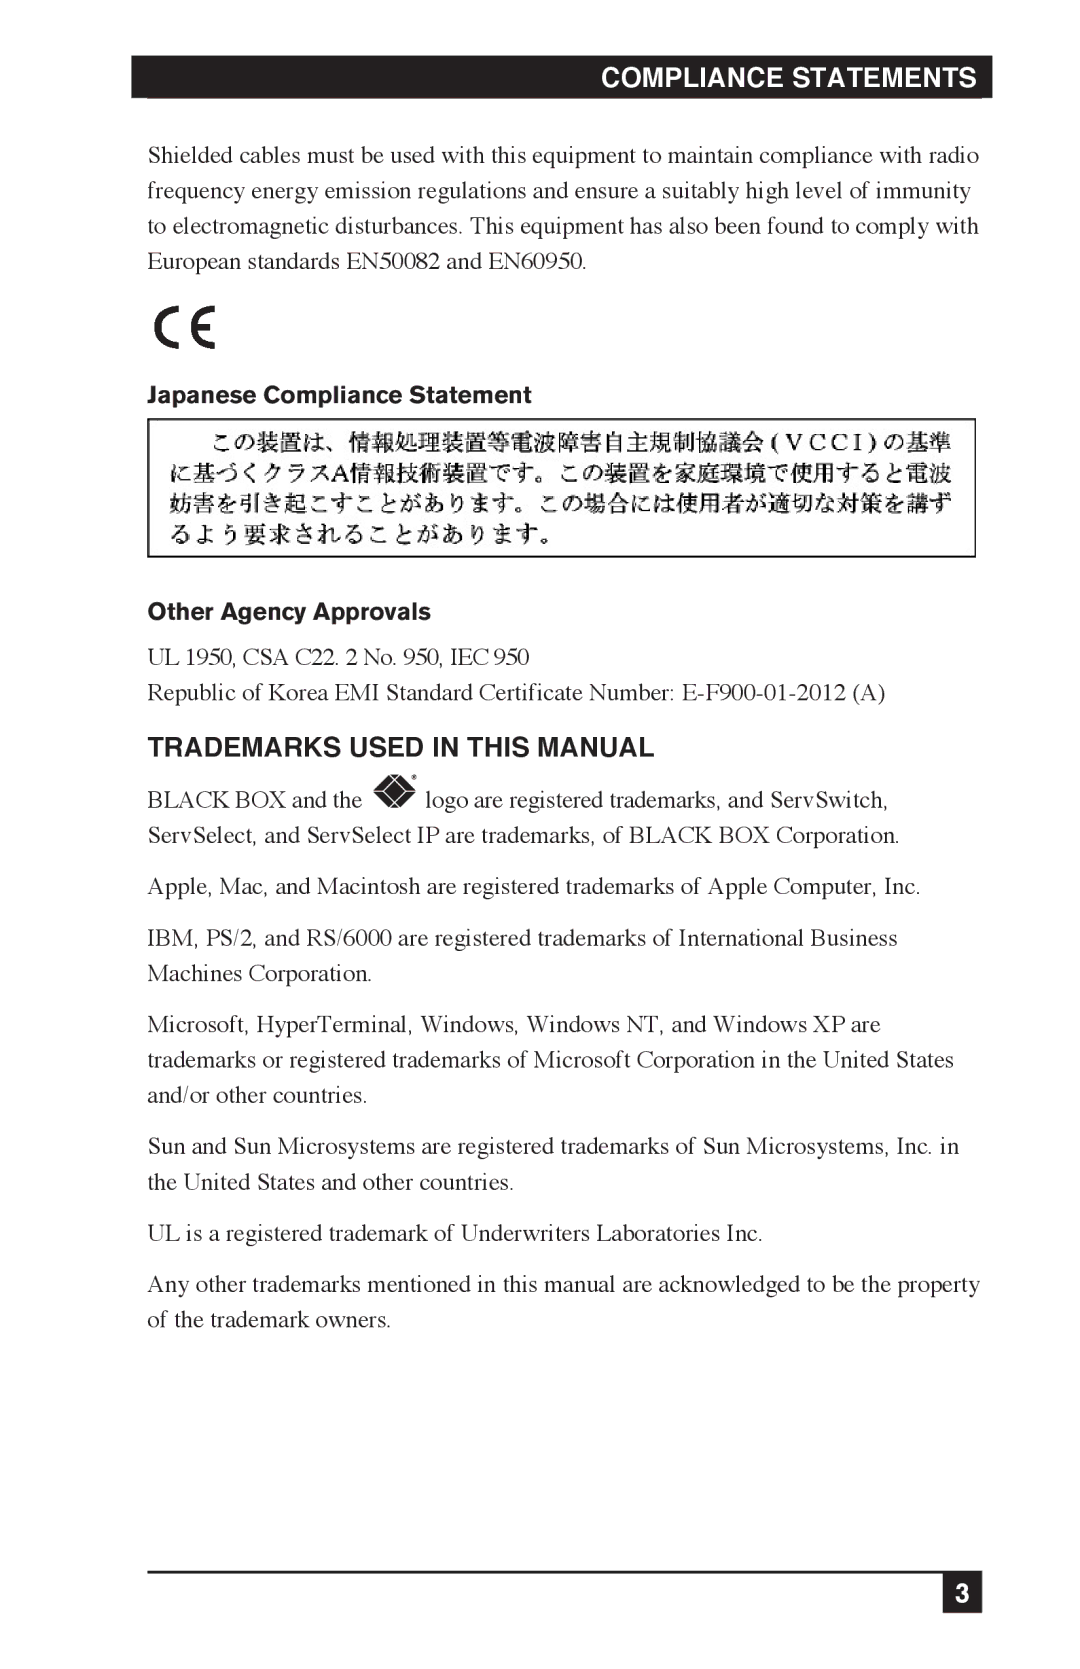 Black Box KV120A, KV212E, KV120E manual Compliance Statements 